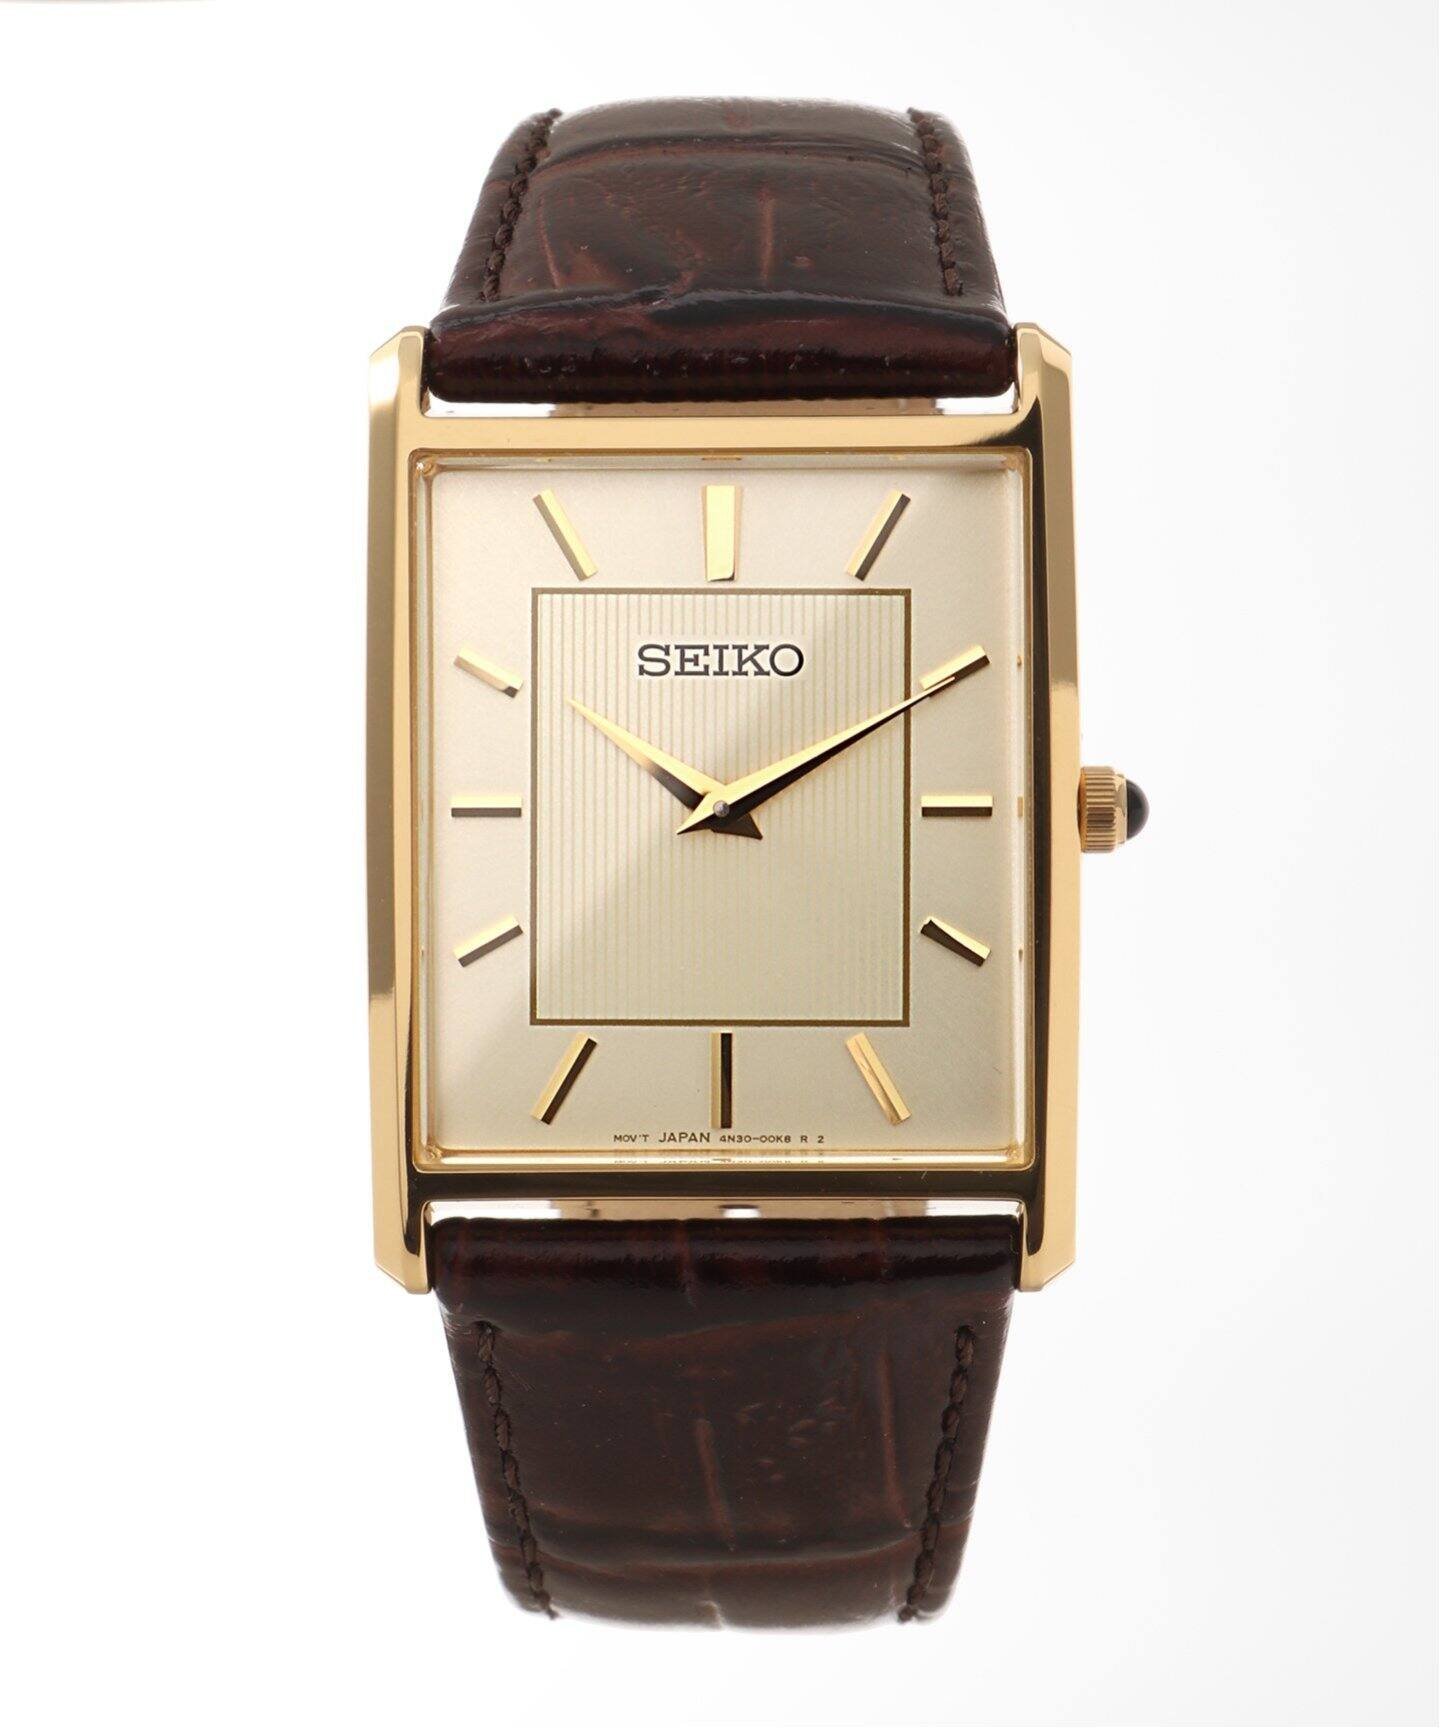 HIROB SEIKO ESSENTIALS SWR064【 ウォッチ 】 ヒロブ アクセサリー・腕時計 腕時計 ゴールド【送料無料】